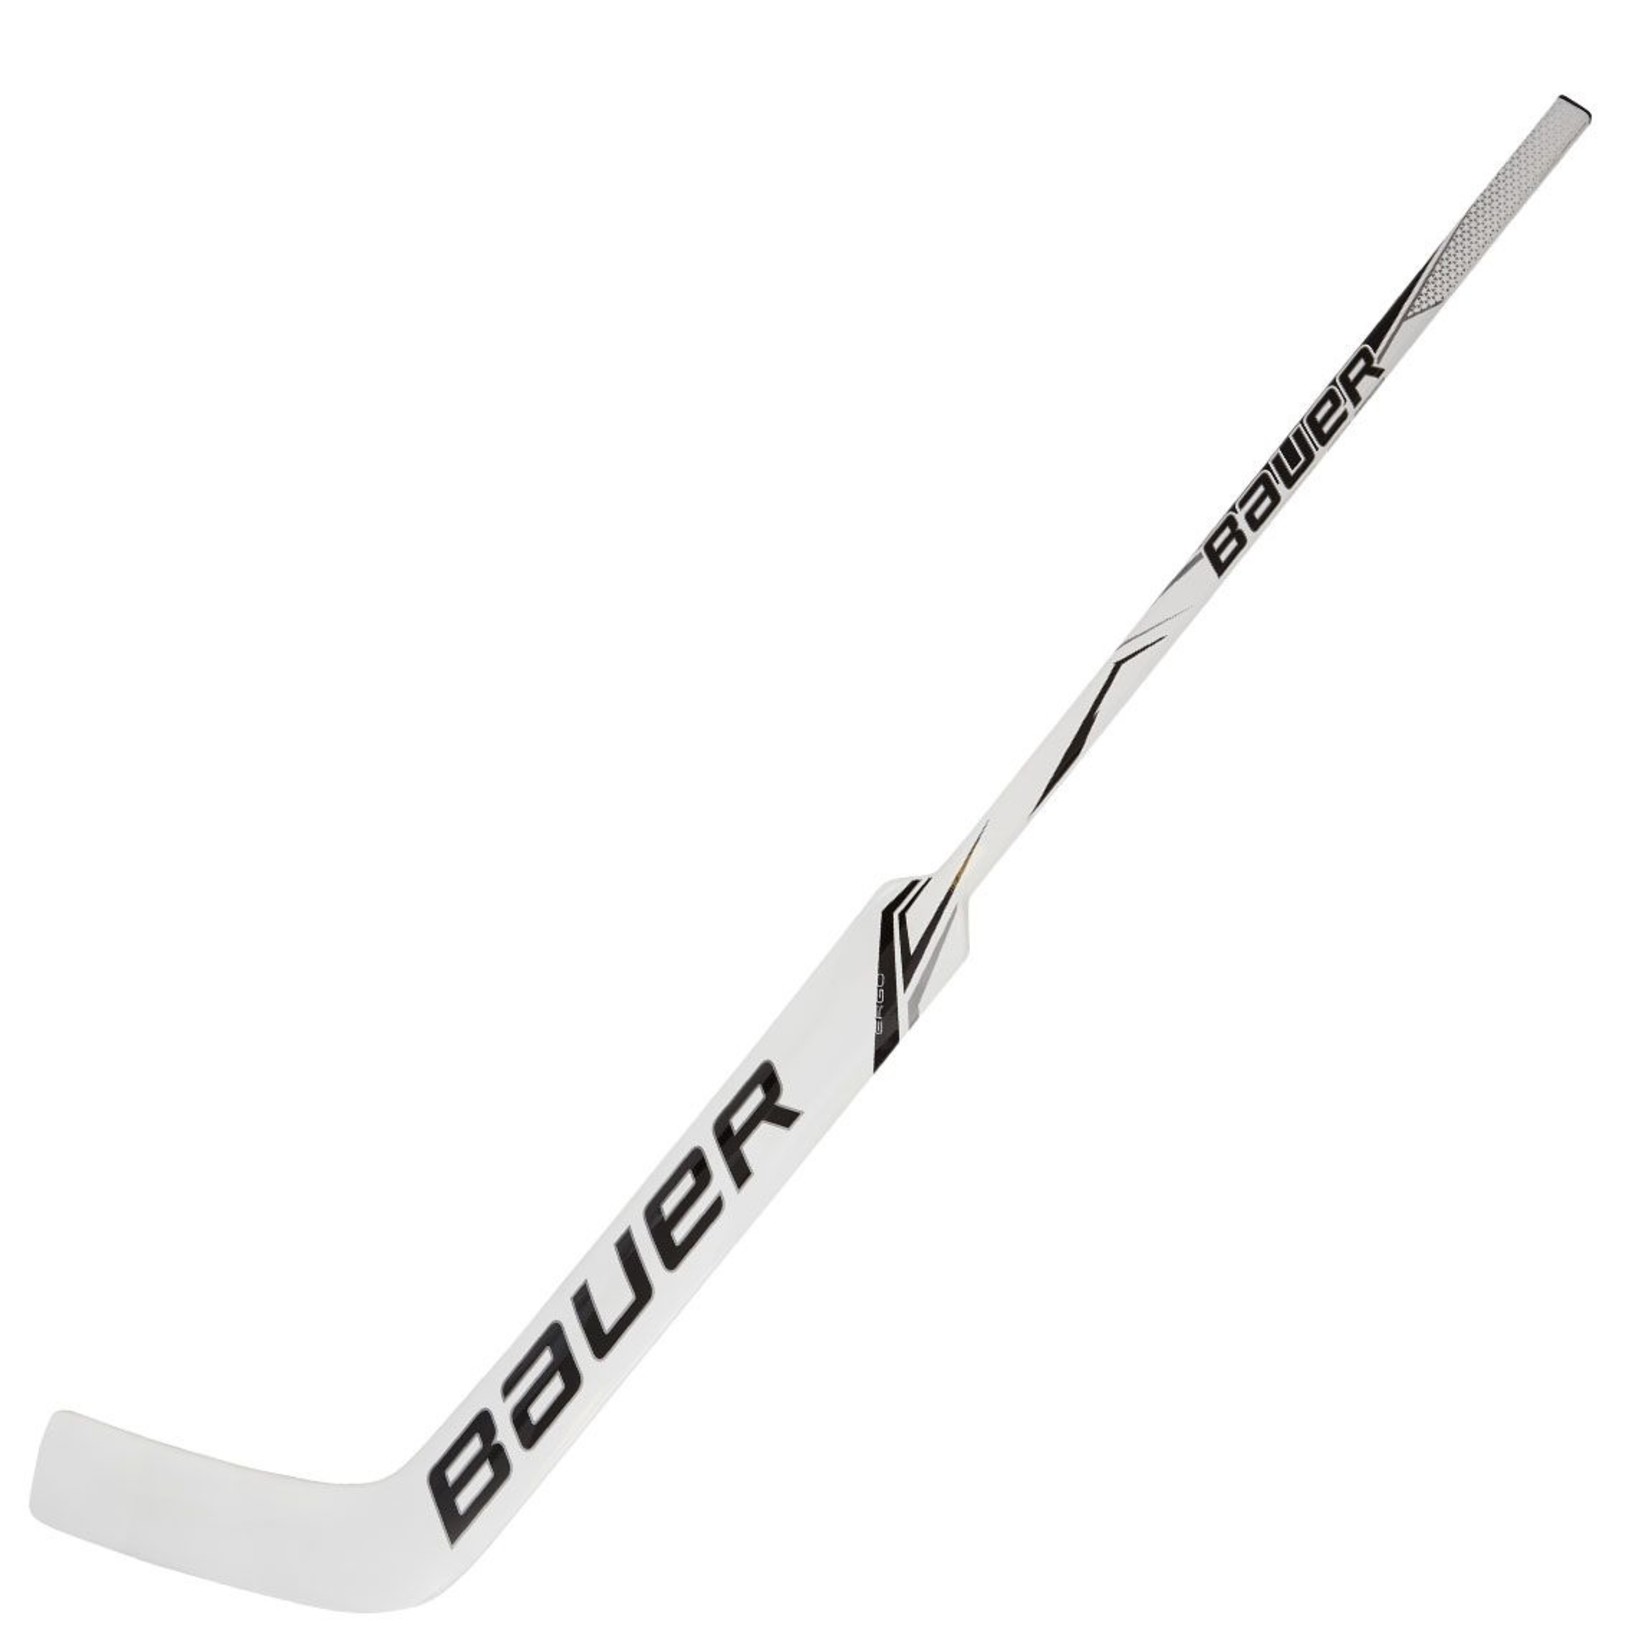 Bauer Bauer Hockey Goal Stick, GSX, Senior